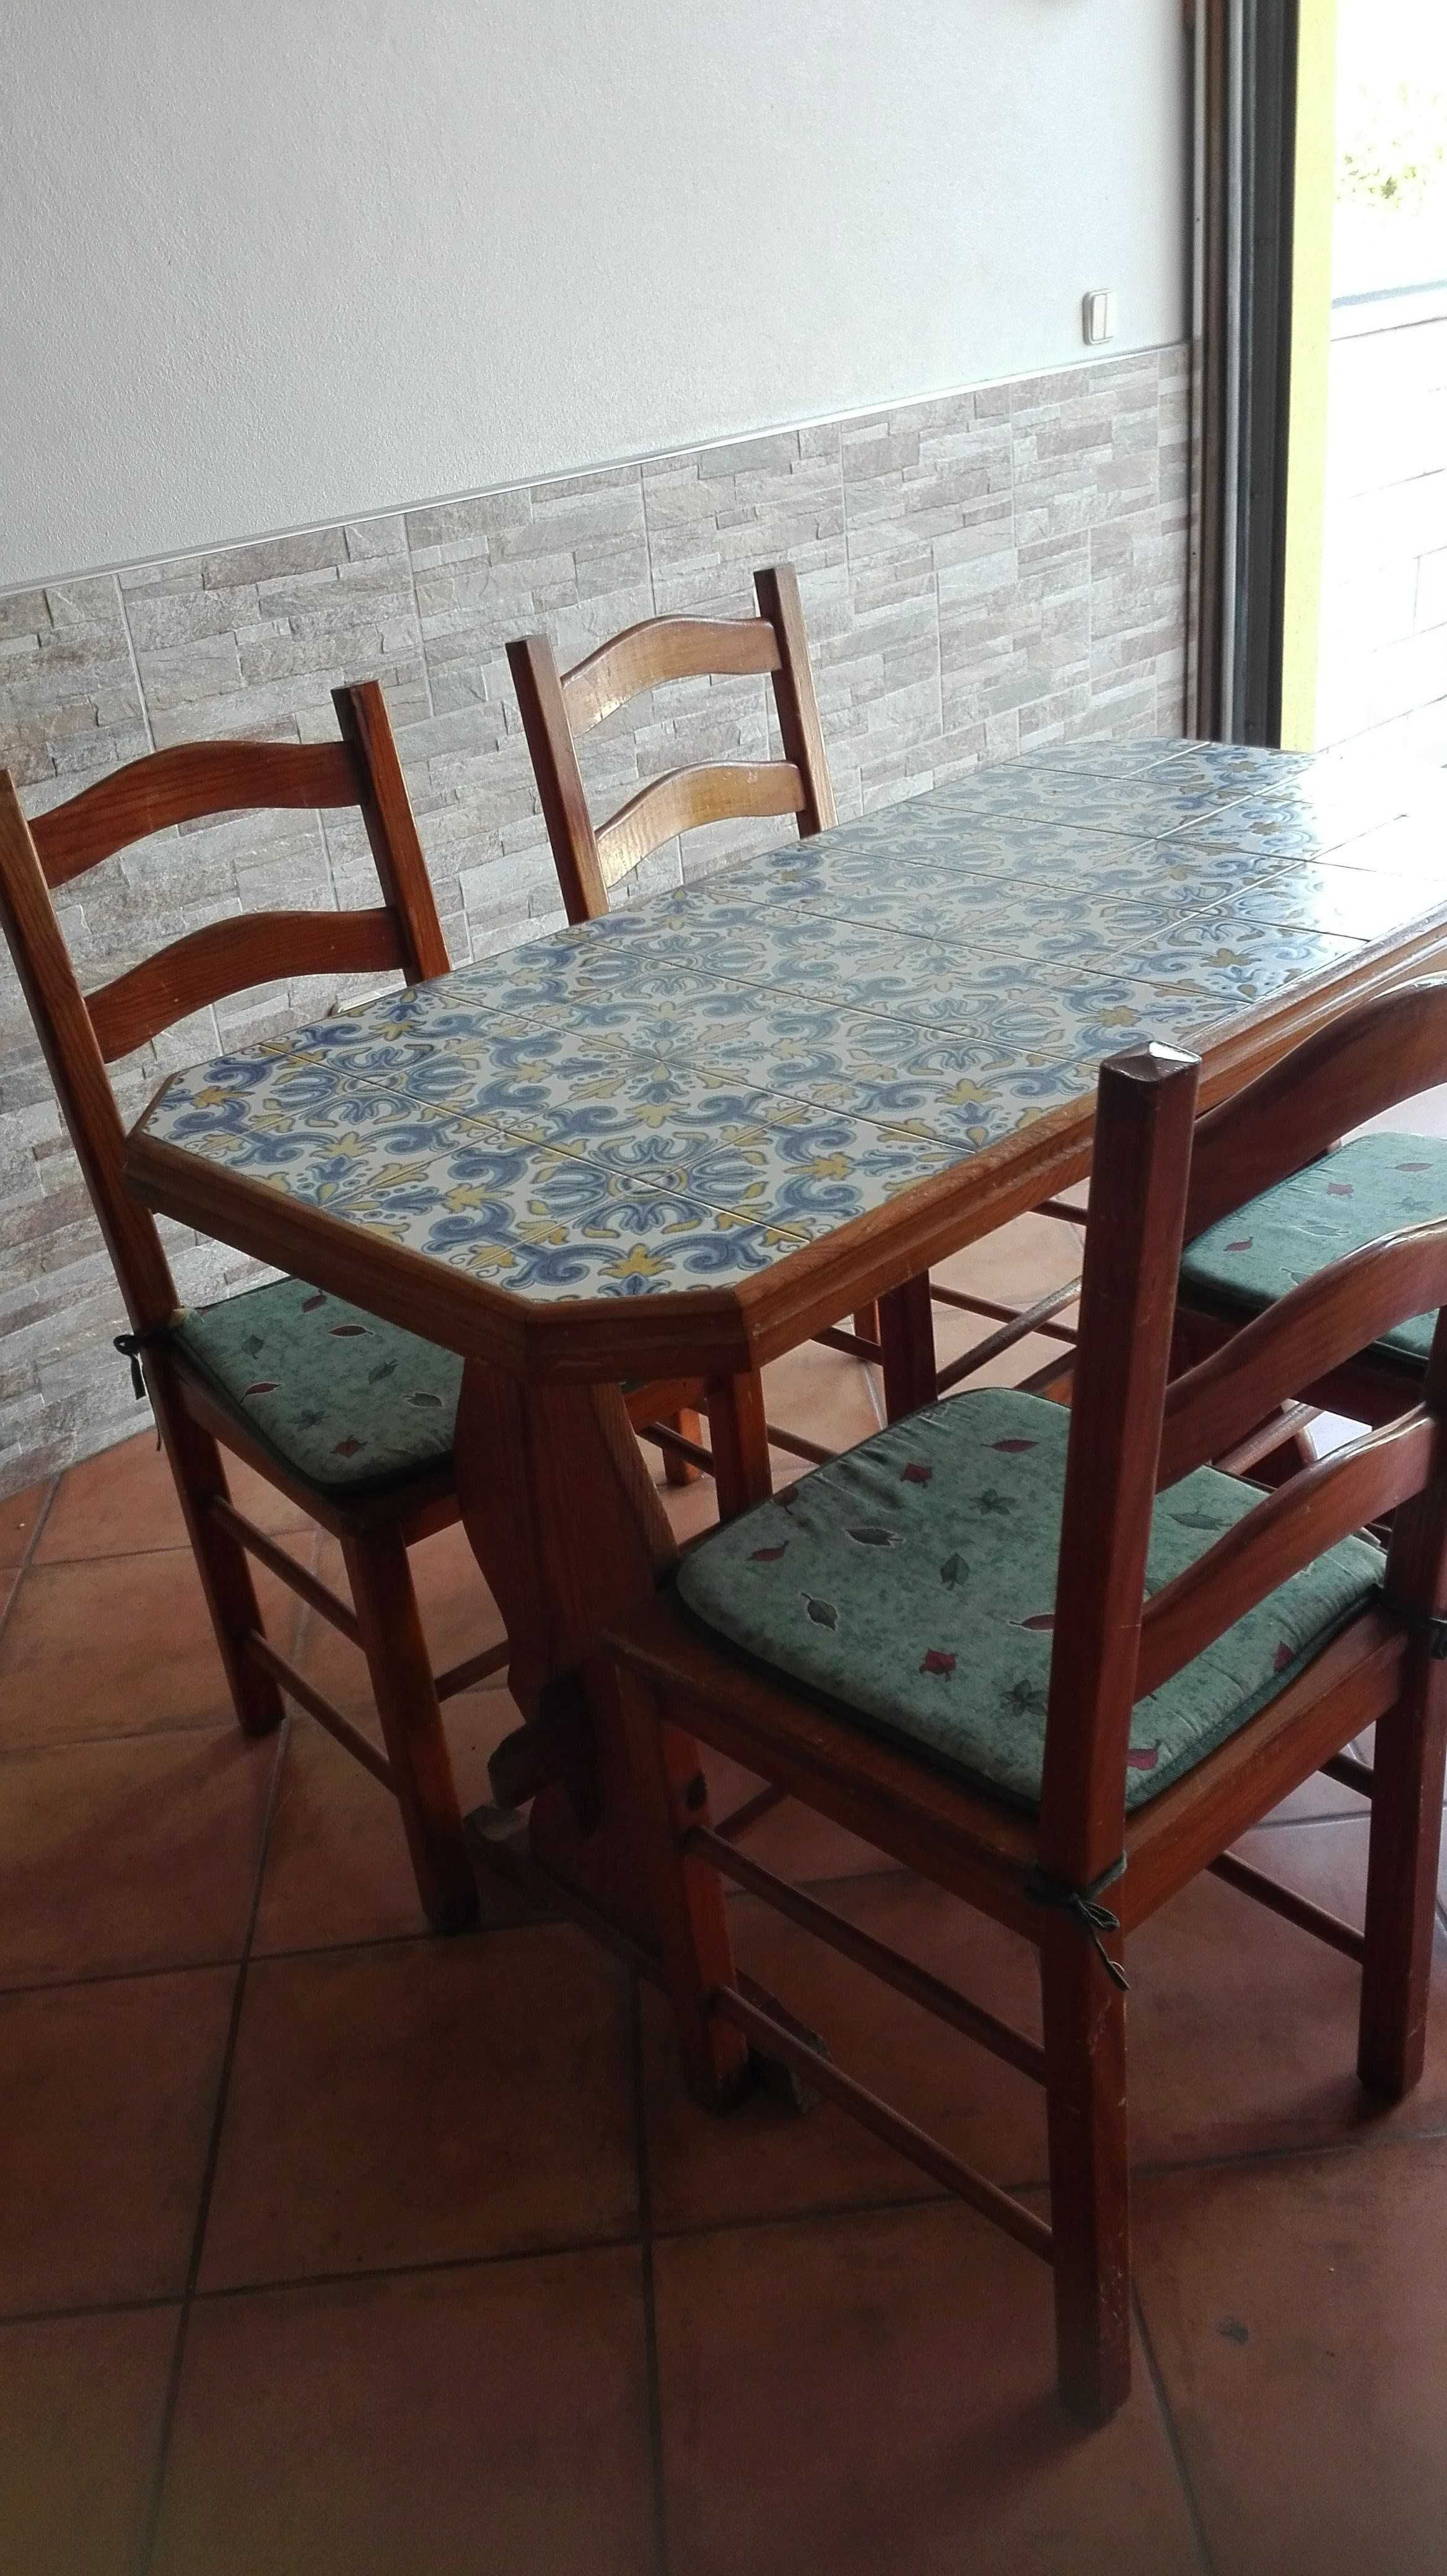 Mesa com fundo em azul e quantro cadeiras antiga